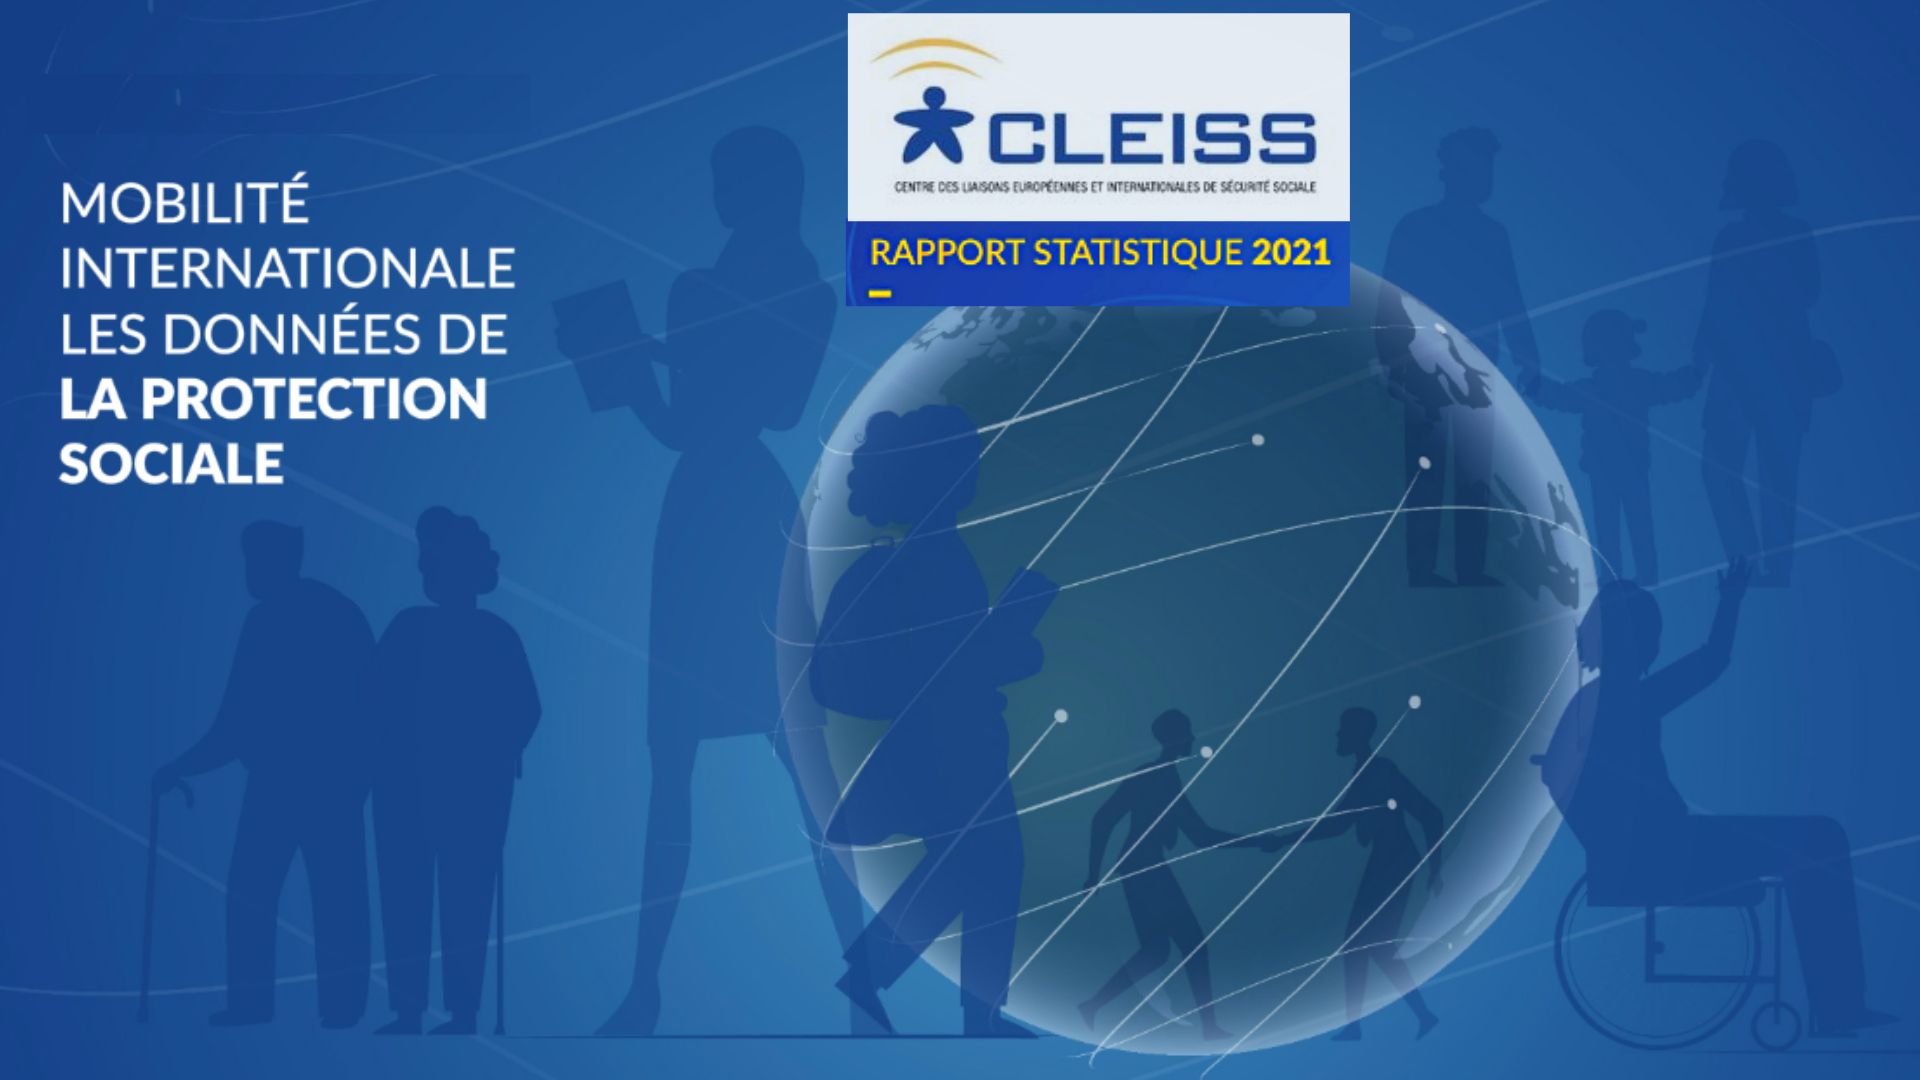 Le rapport statistique 2021 du Cleiss est paru